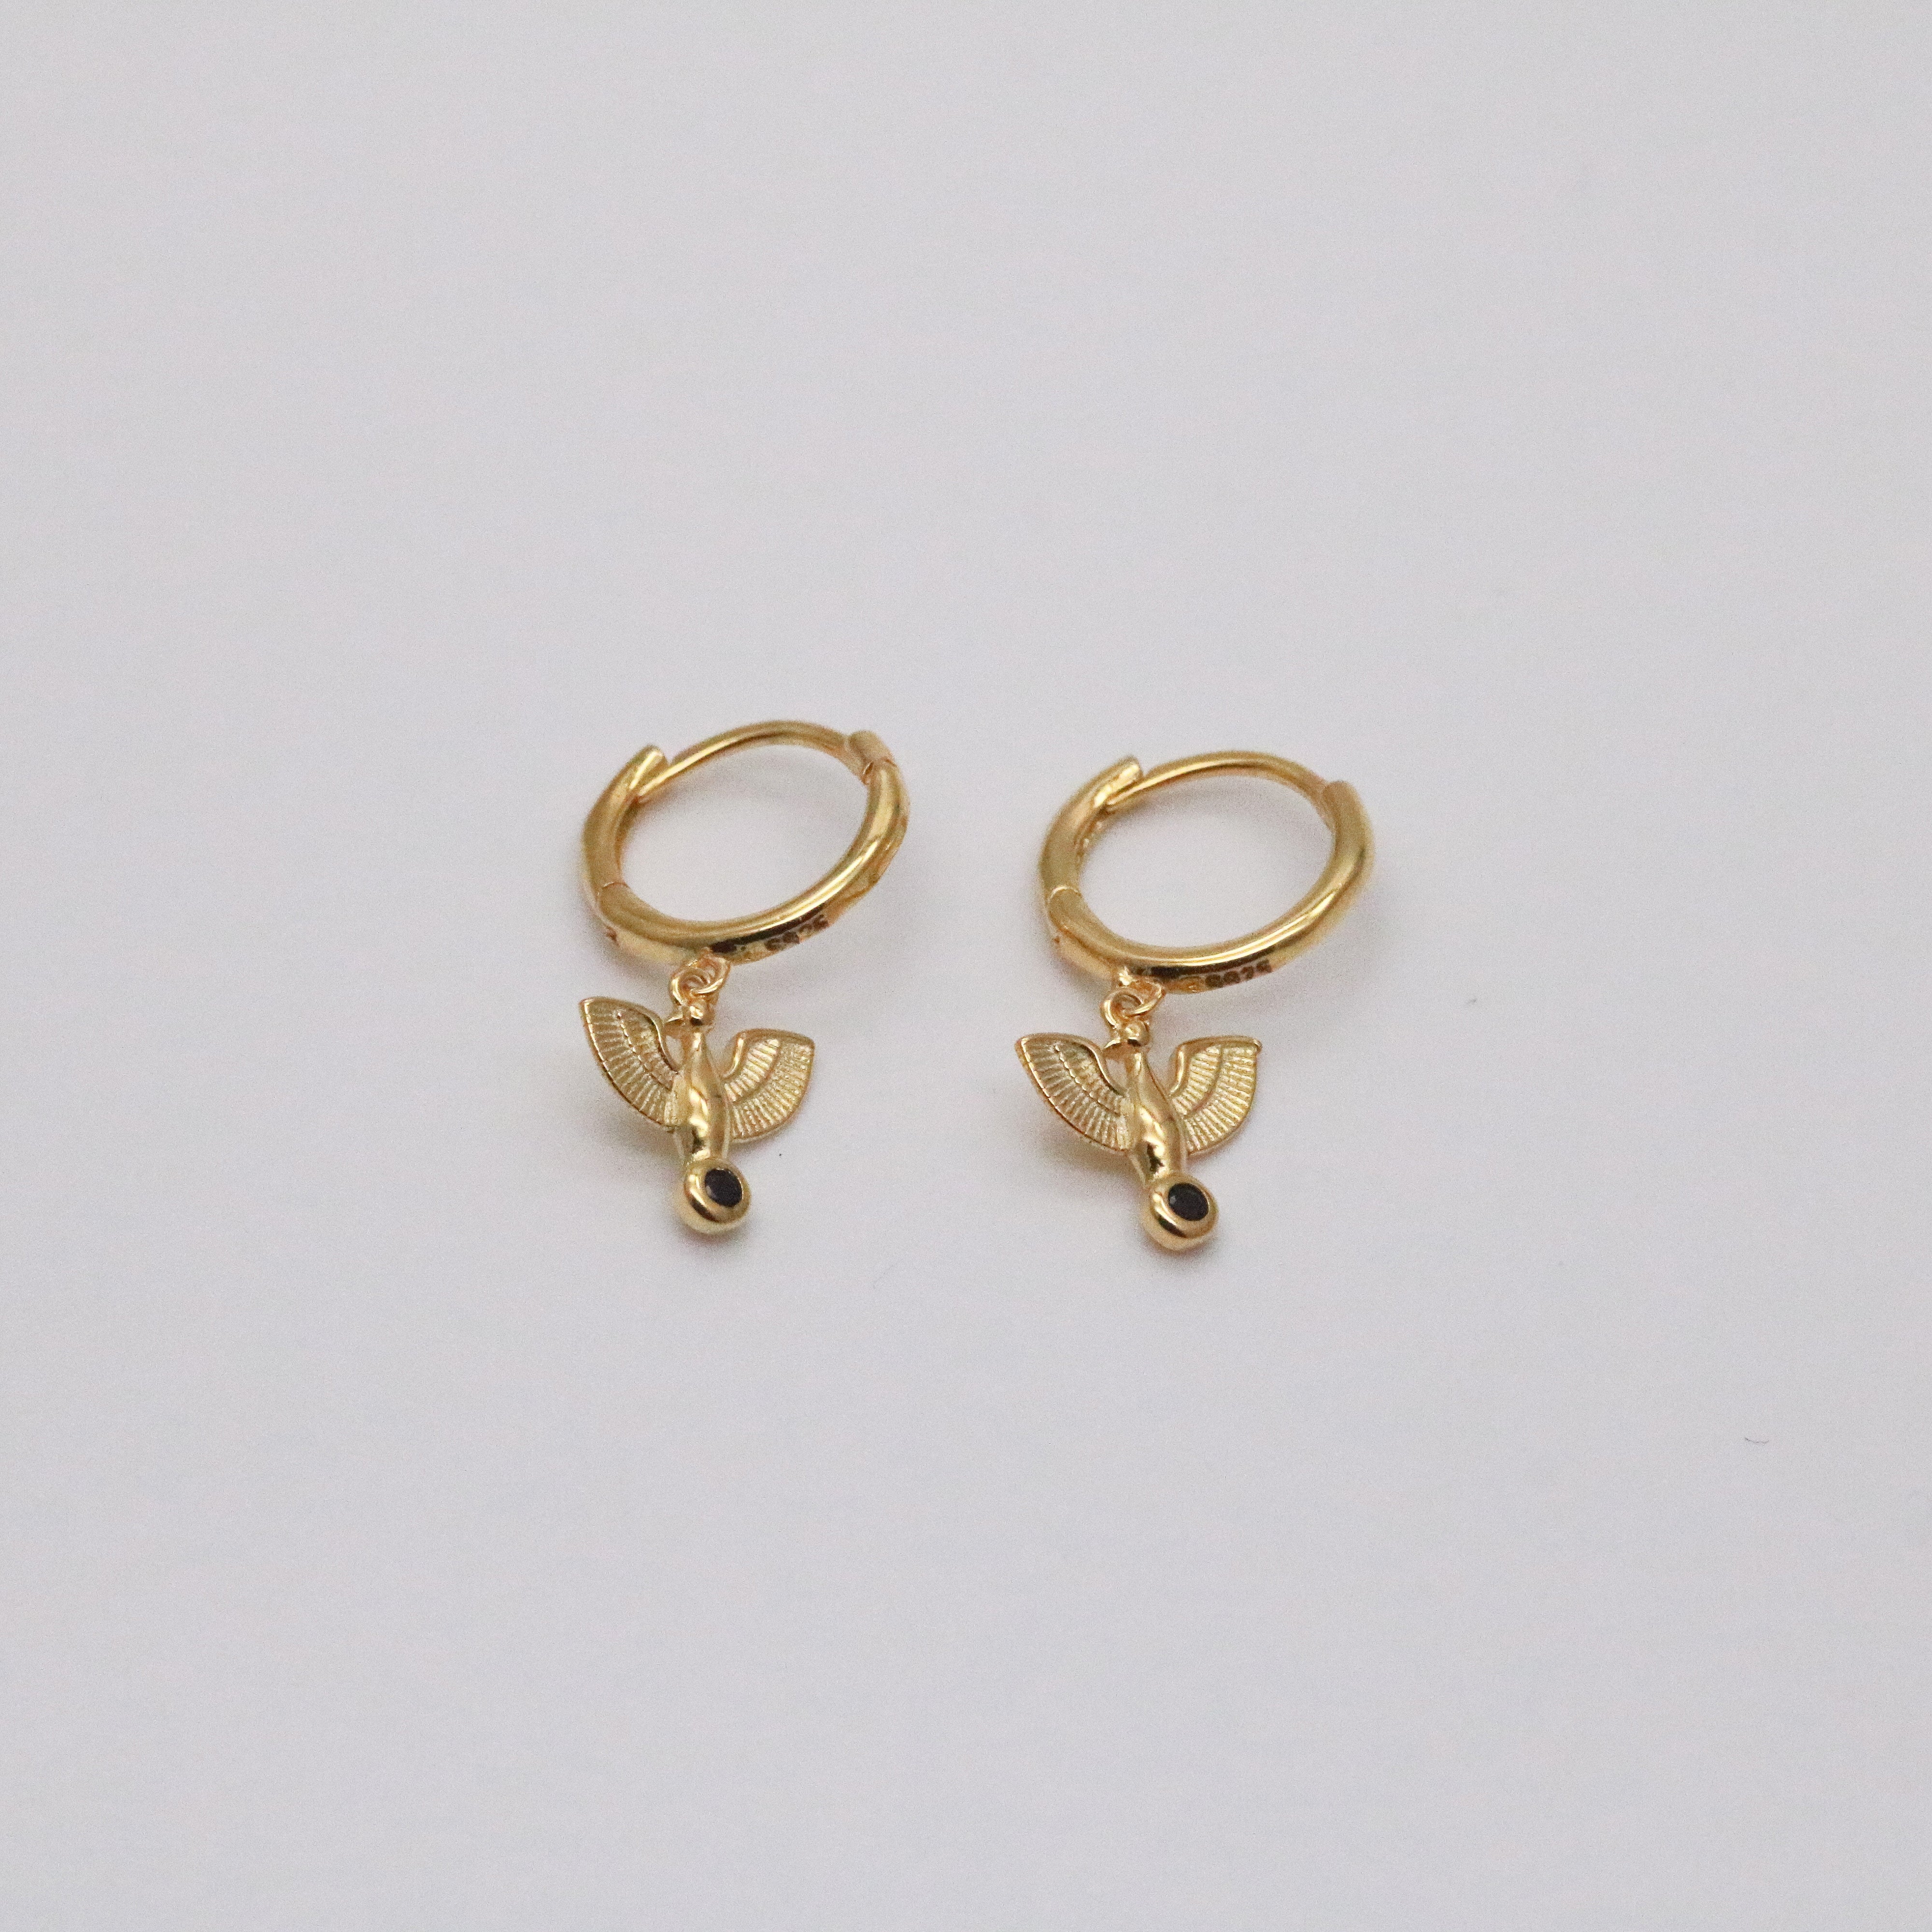 Meideya Jewelry - Eagle hoop earrings in 18k gold